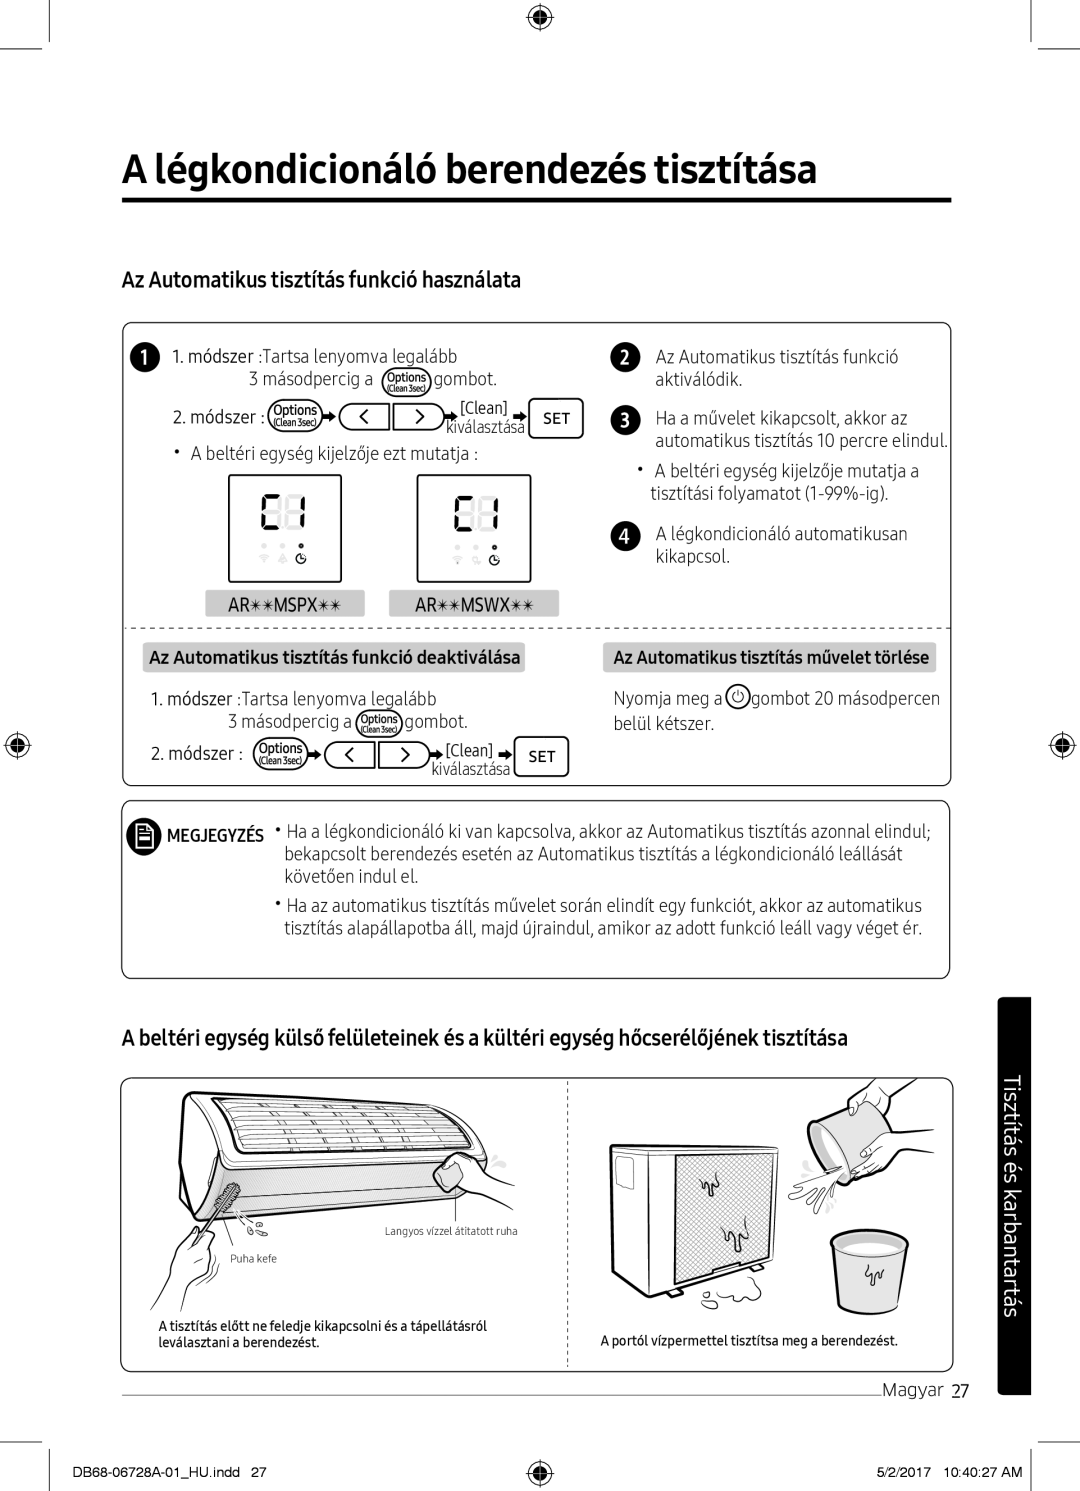 Samsung AR09MSPXAWKXEU manual A légkondicionáló berendezés tisztítása, Az Automatikus tisztítás funkció használata 